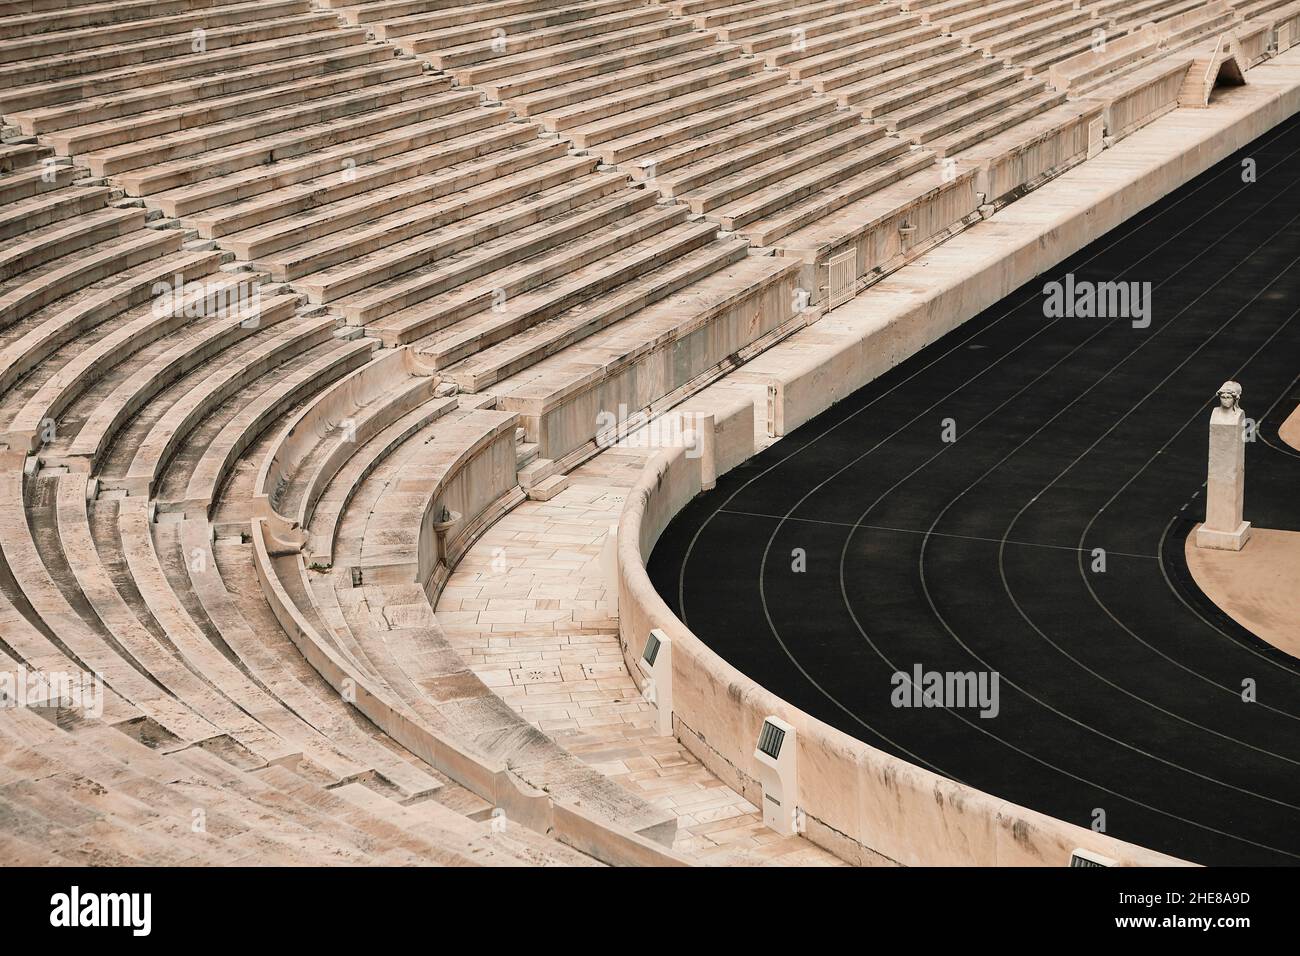 The Panathenaic Stadium, Athens, Greece Stock Photo